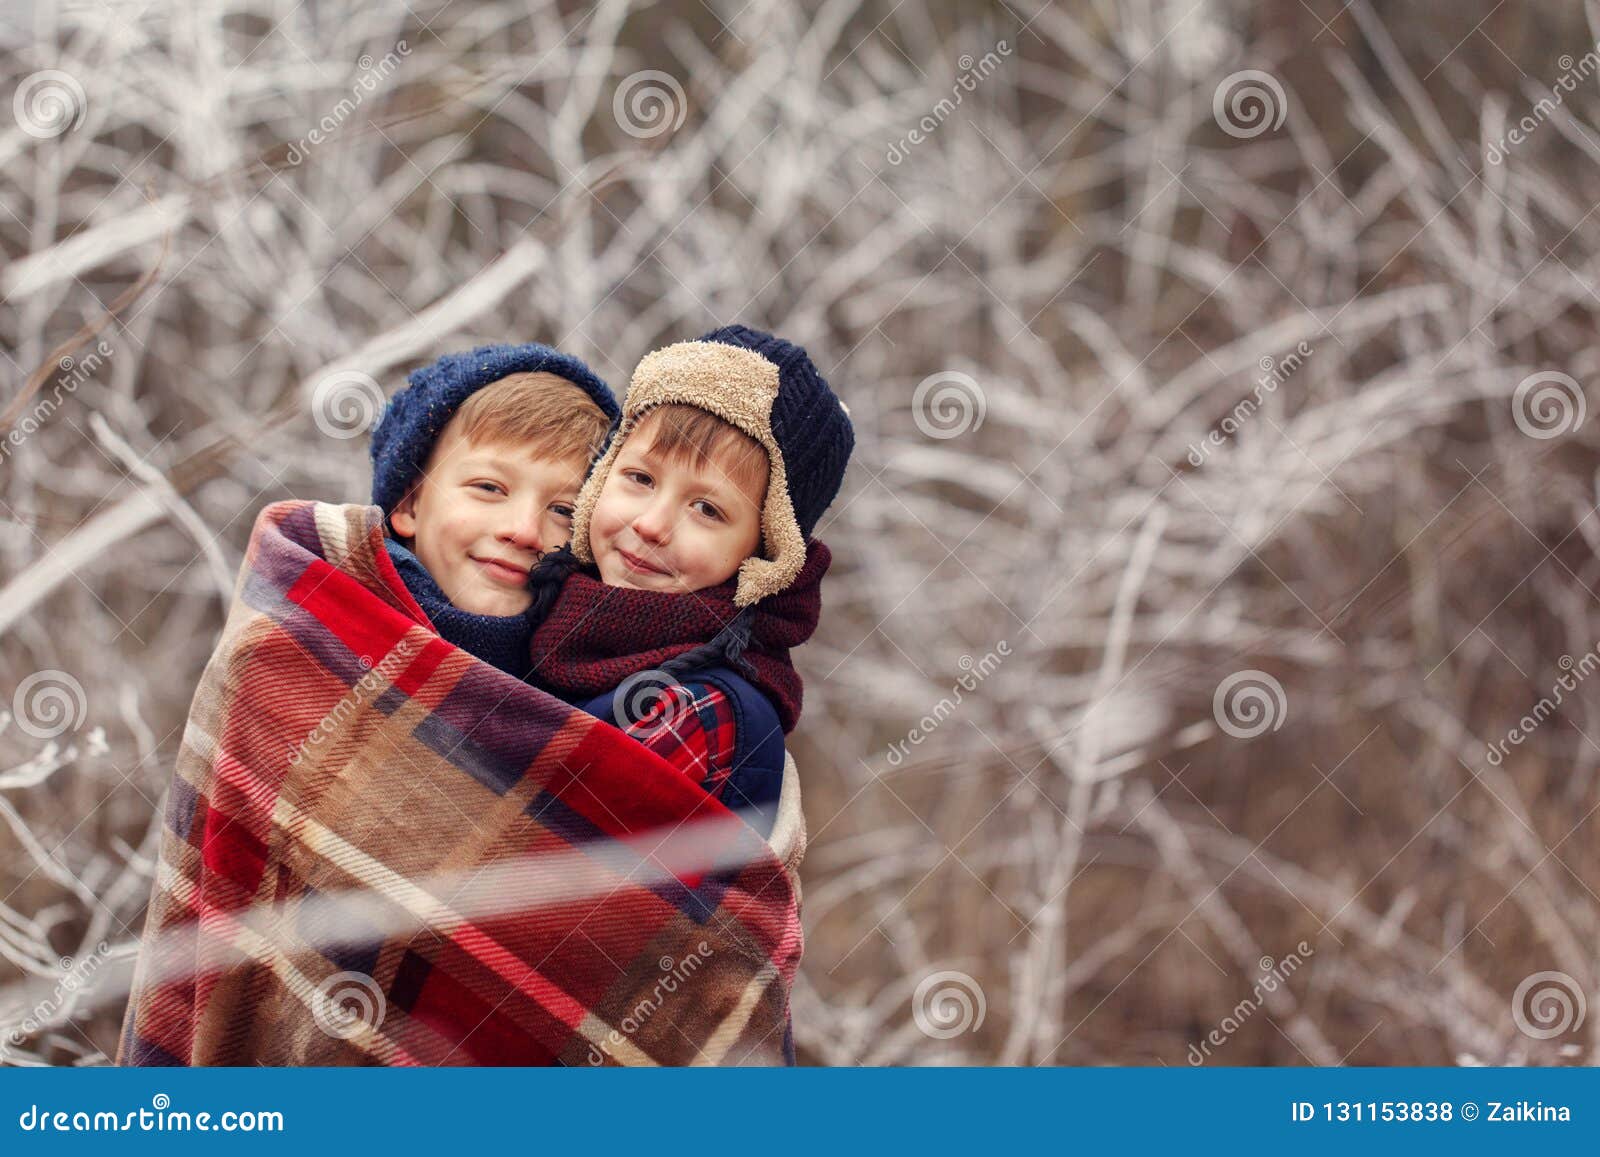 Two Little Boys Friends Hug Under Warm Blanket in Winter Forest ...